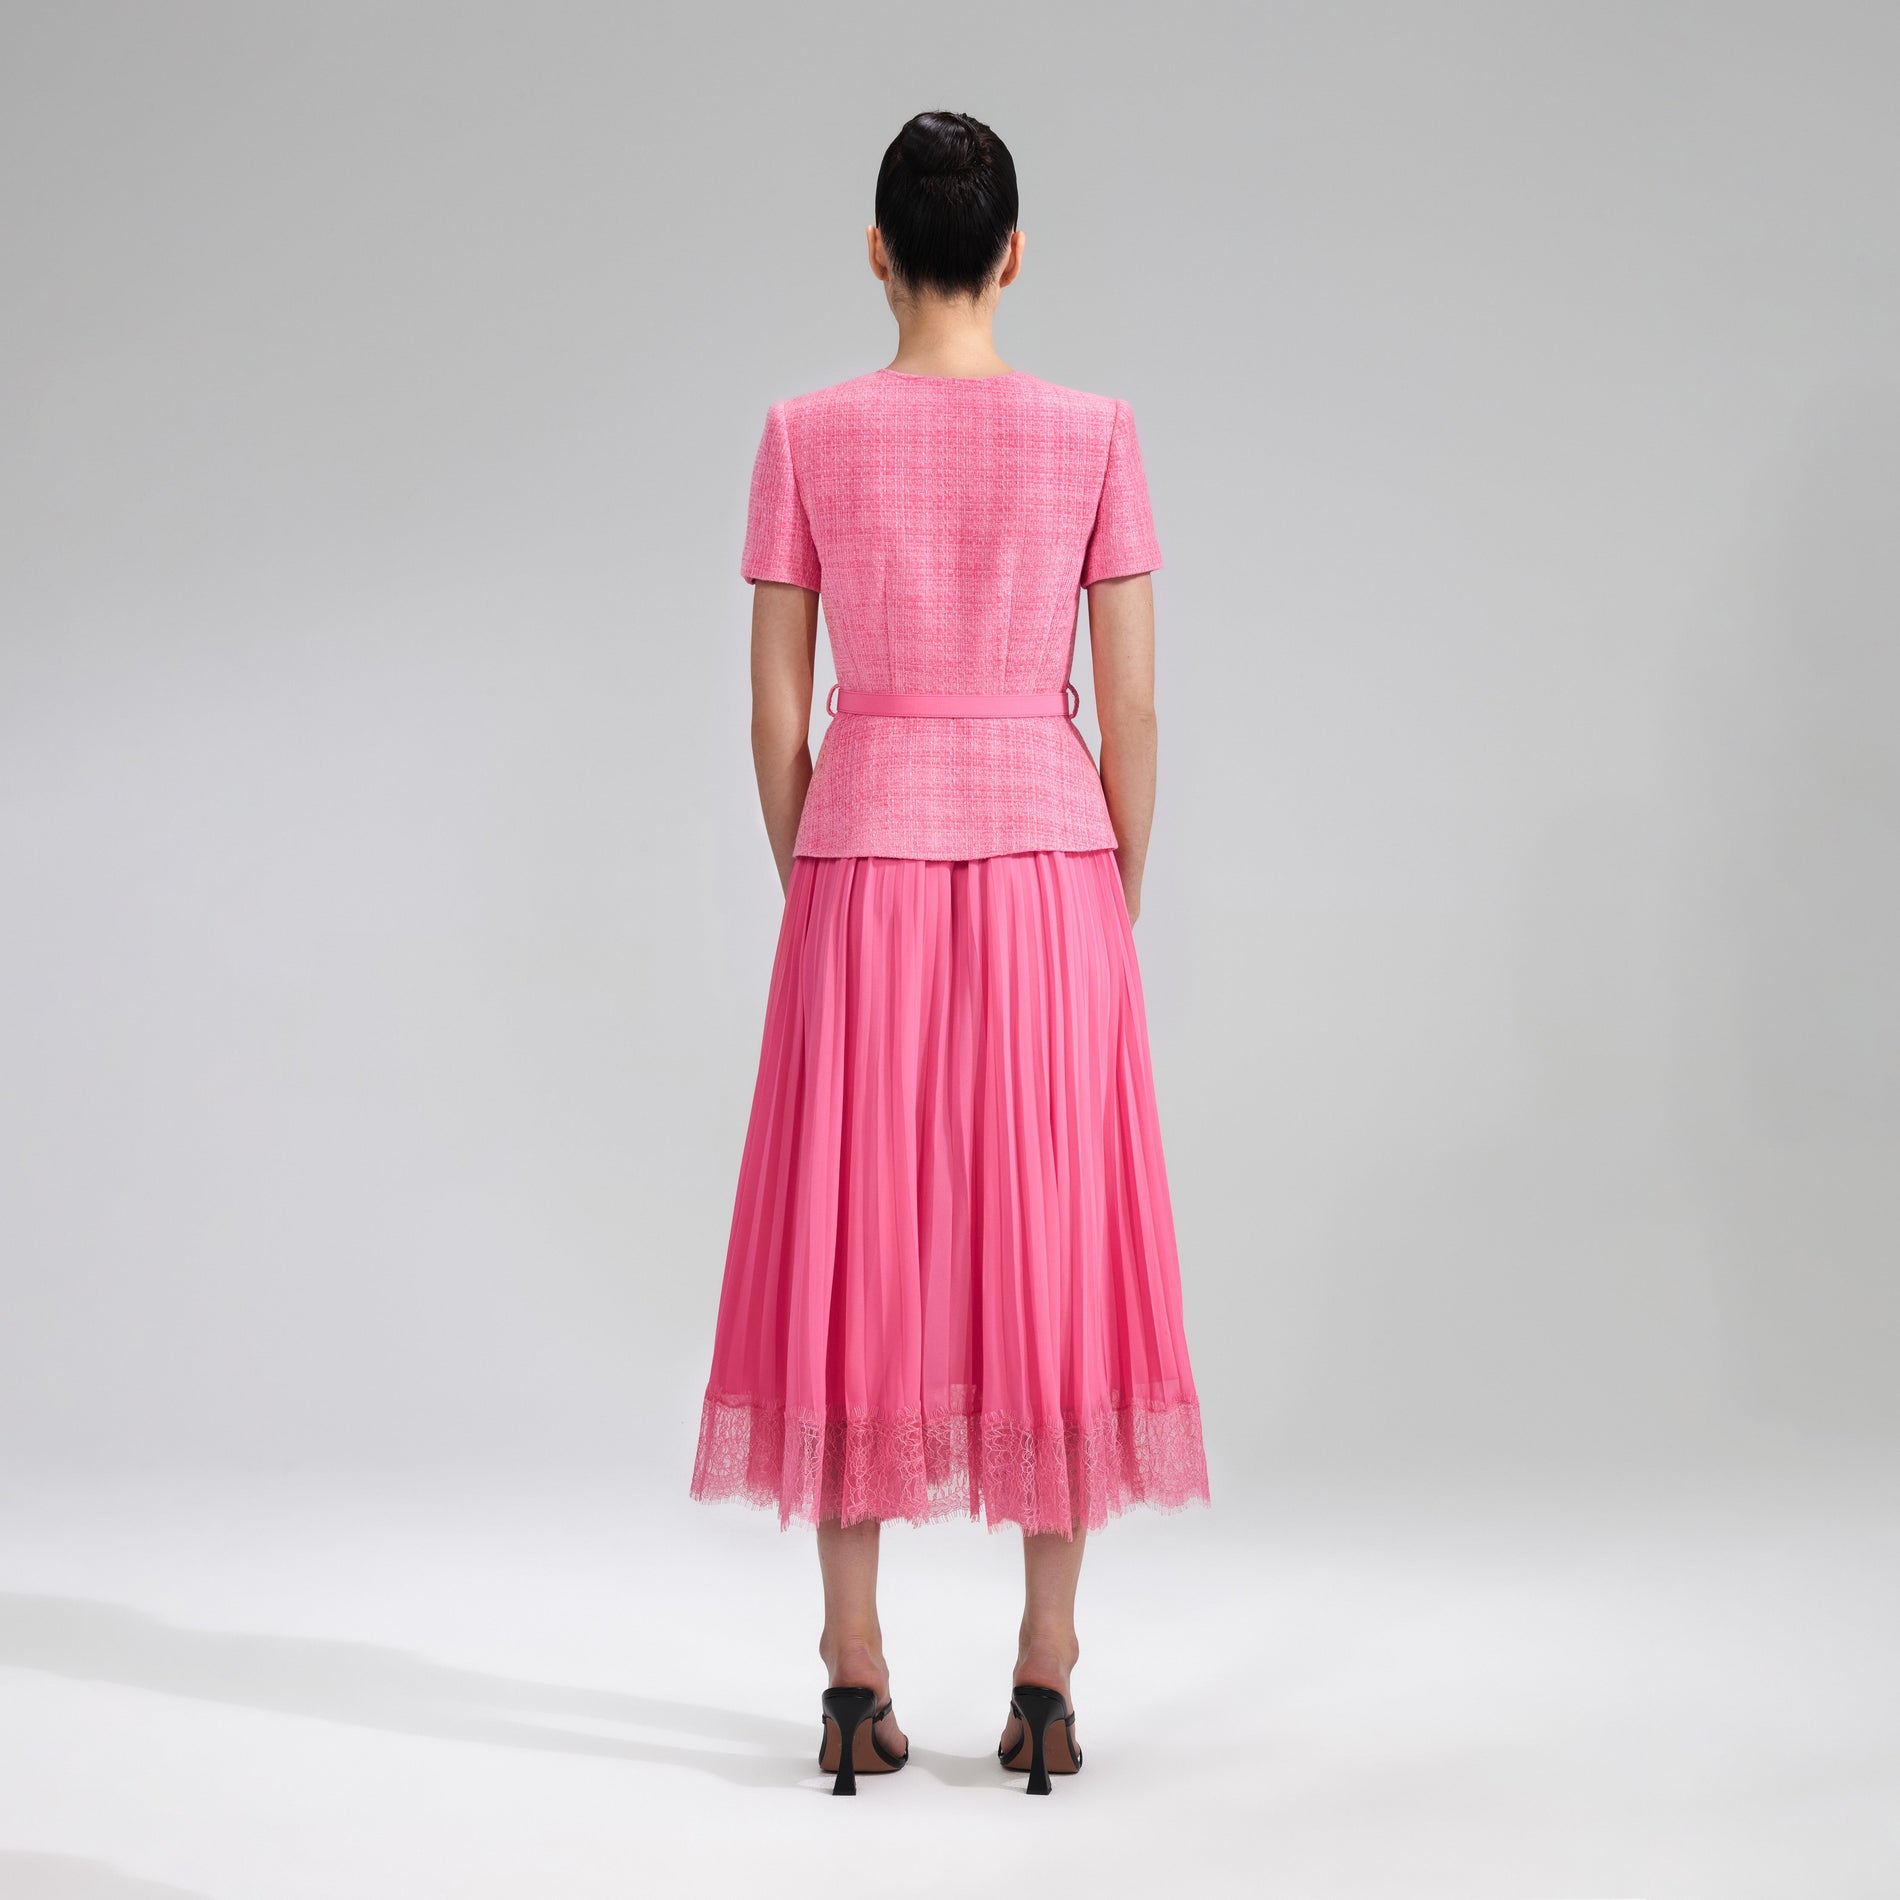 A woman wearing the Pink Boucle Chiffon Midi Dress